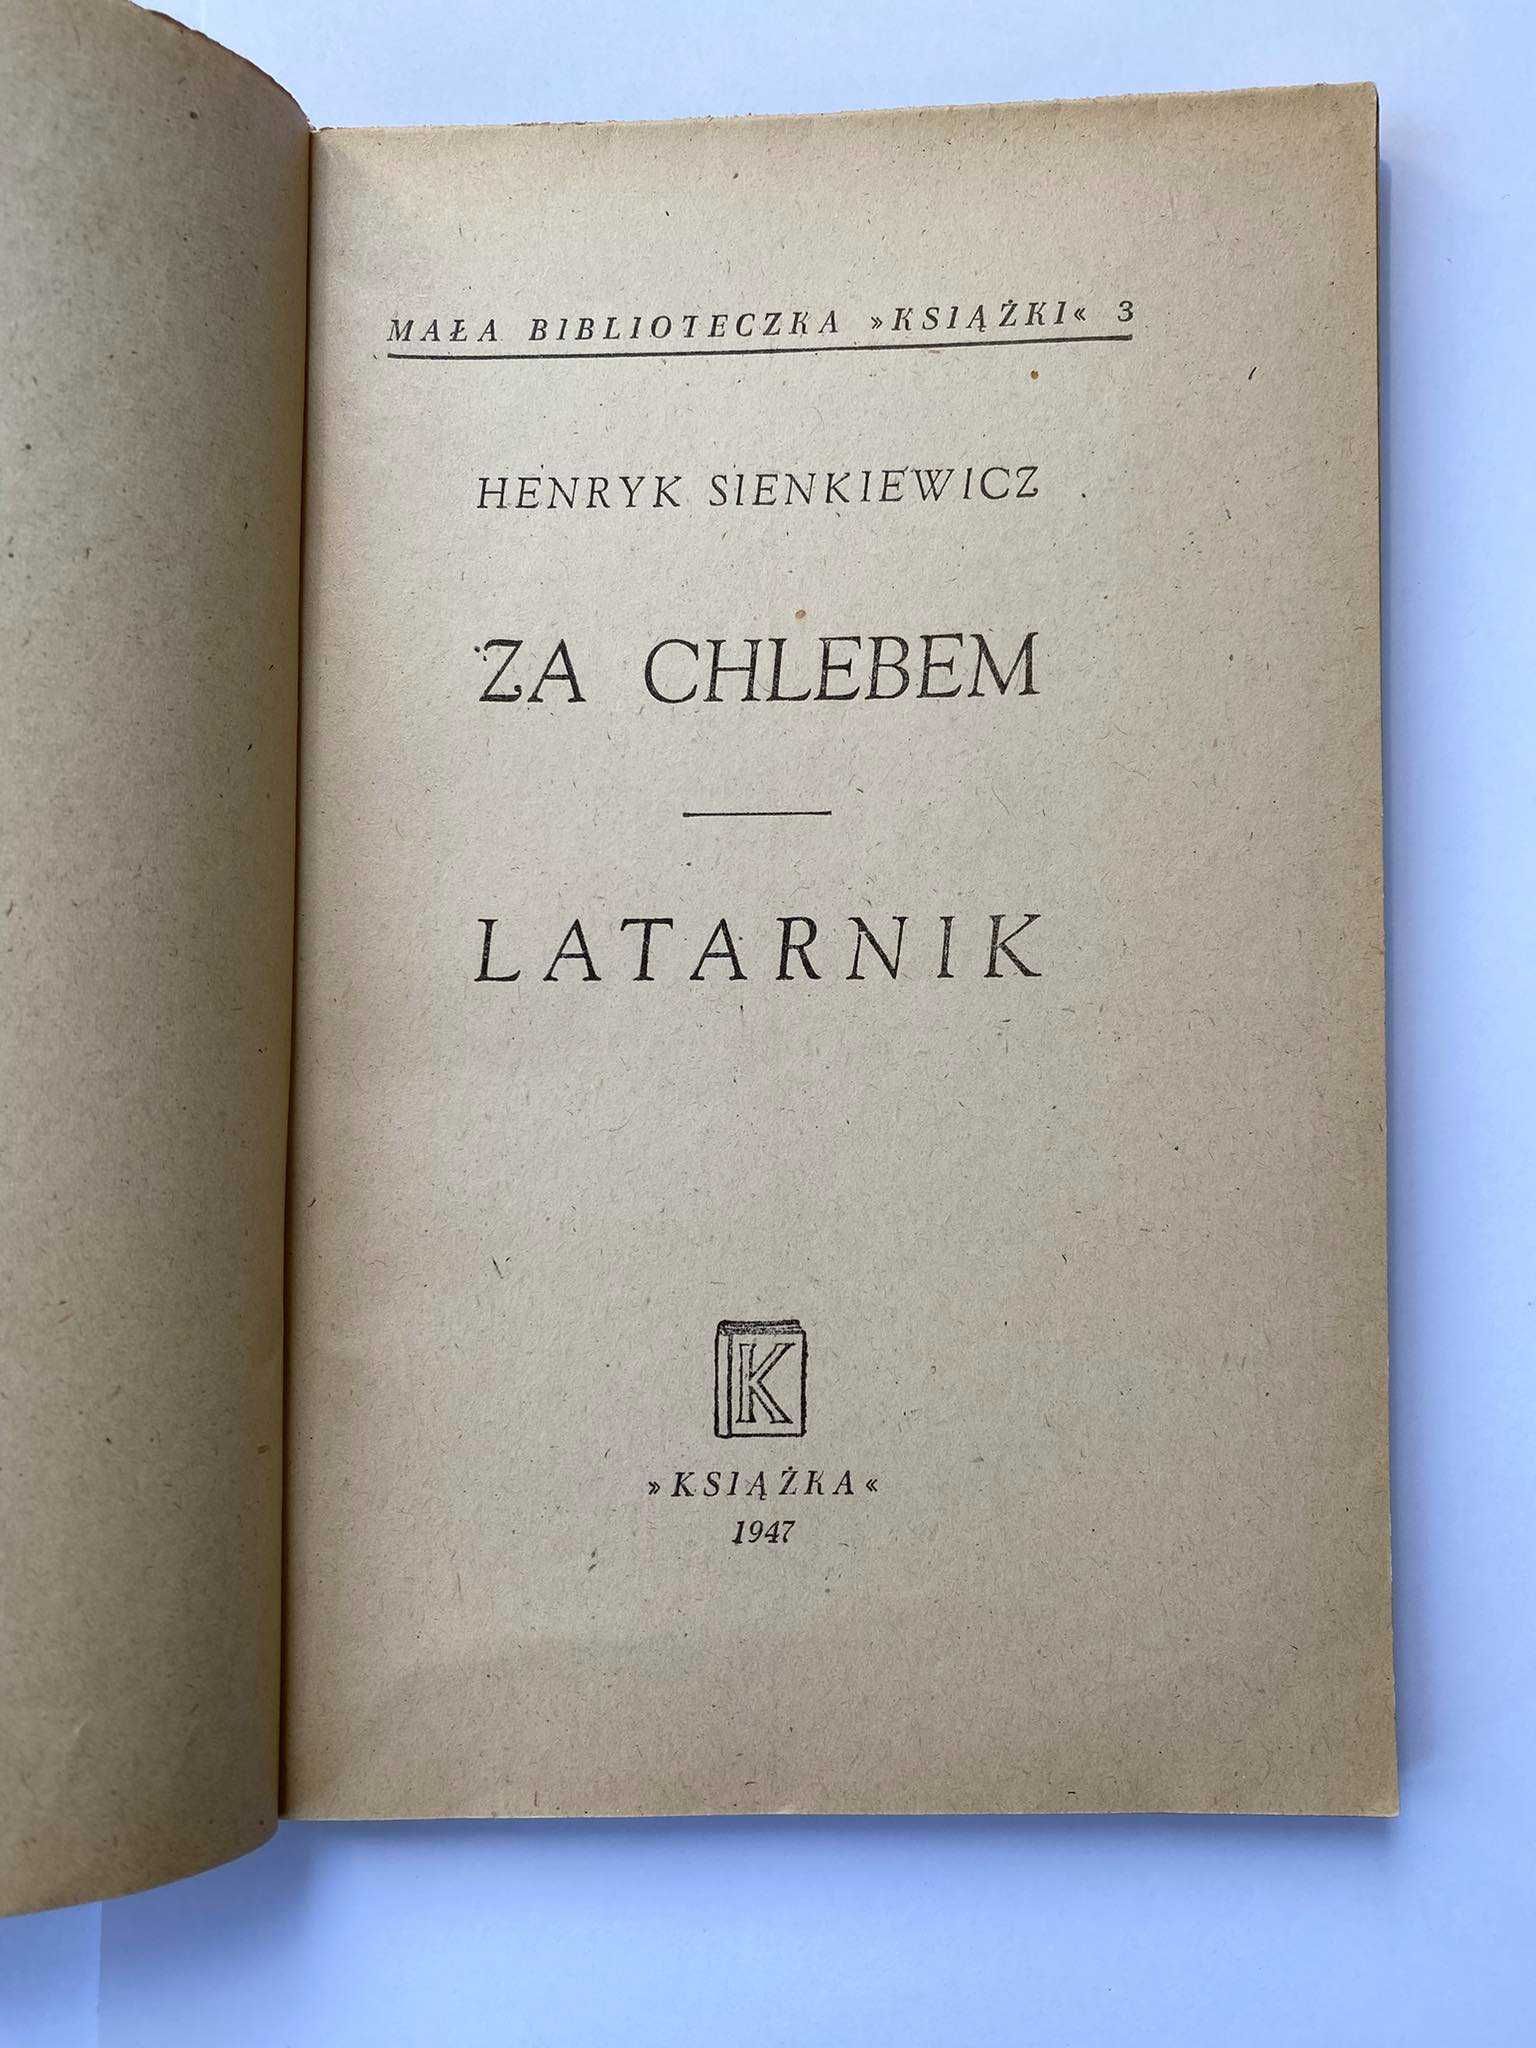 Książka „Za chlebem” i „Latarnik” Henryk Sienkiewicz